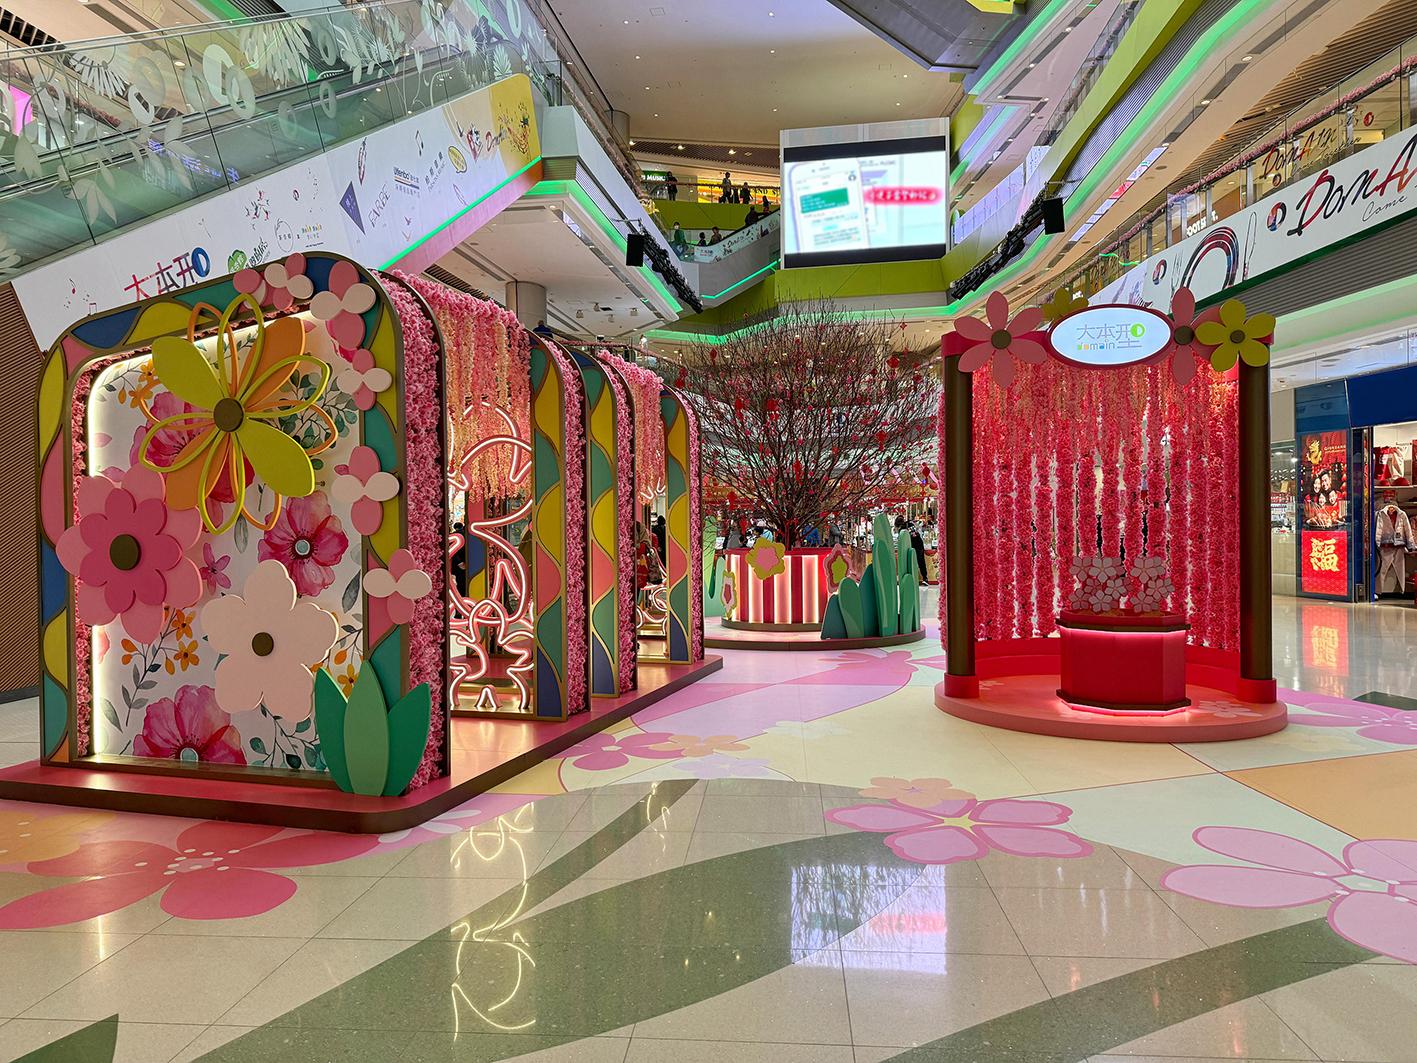 为庆祝农历新年将至，香港房屋委员会在辖下商场举办新春庆祝活动，与市民共度新岁及推动经济。图示油塘区域商场「大本型」地下中庭以「花镜型缘」为主题的贺年装饰。